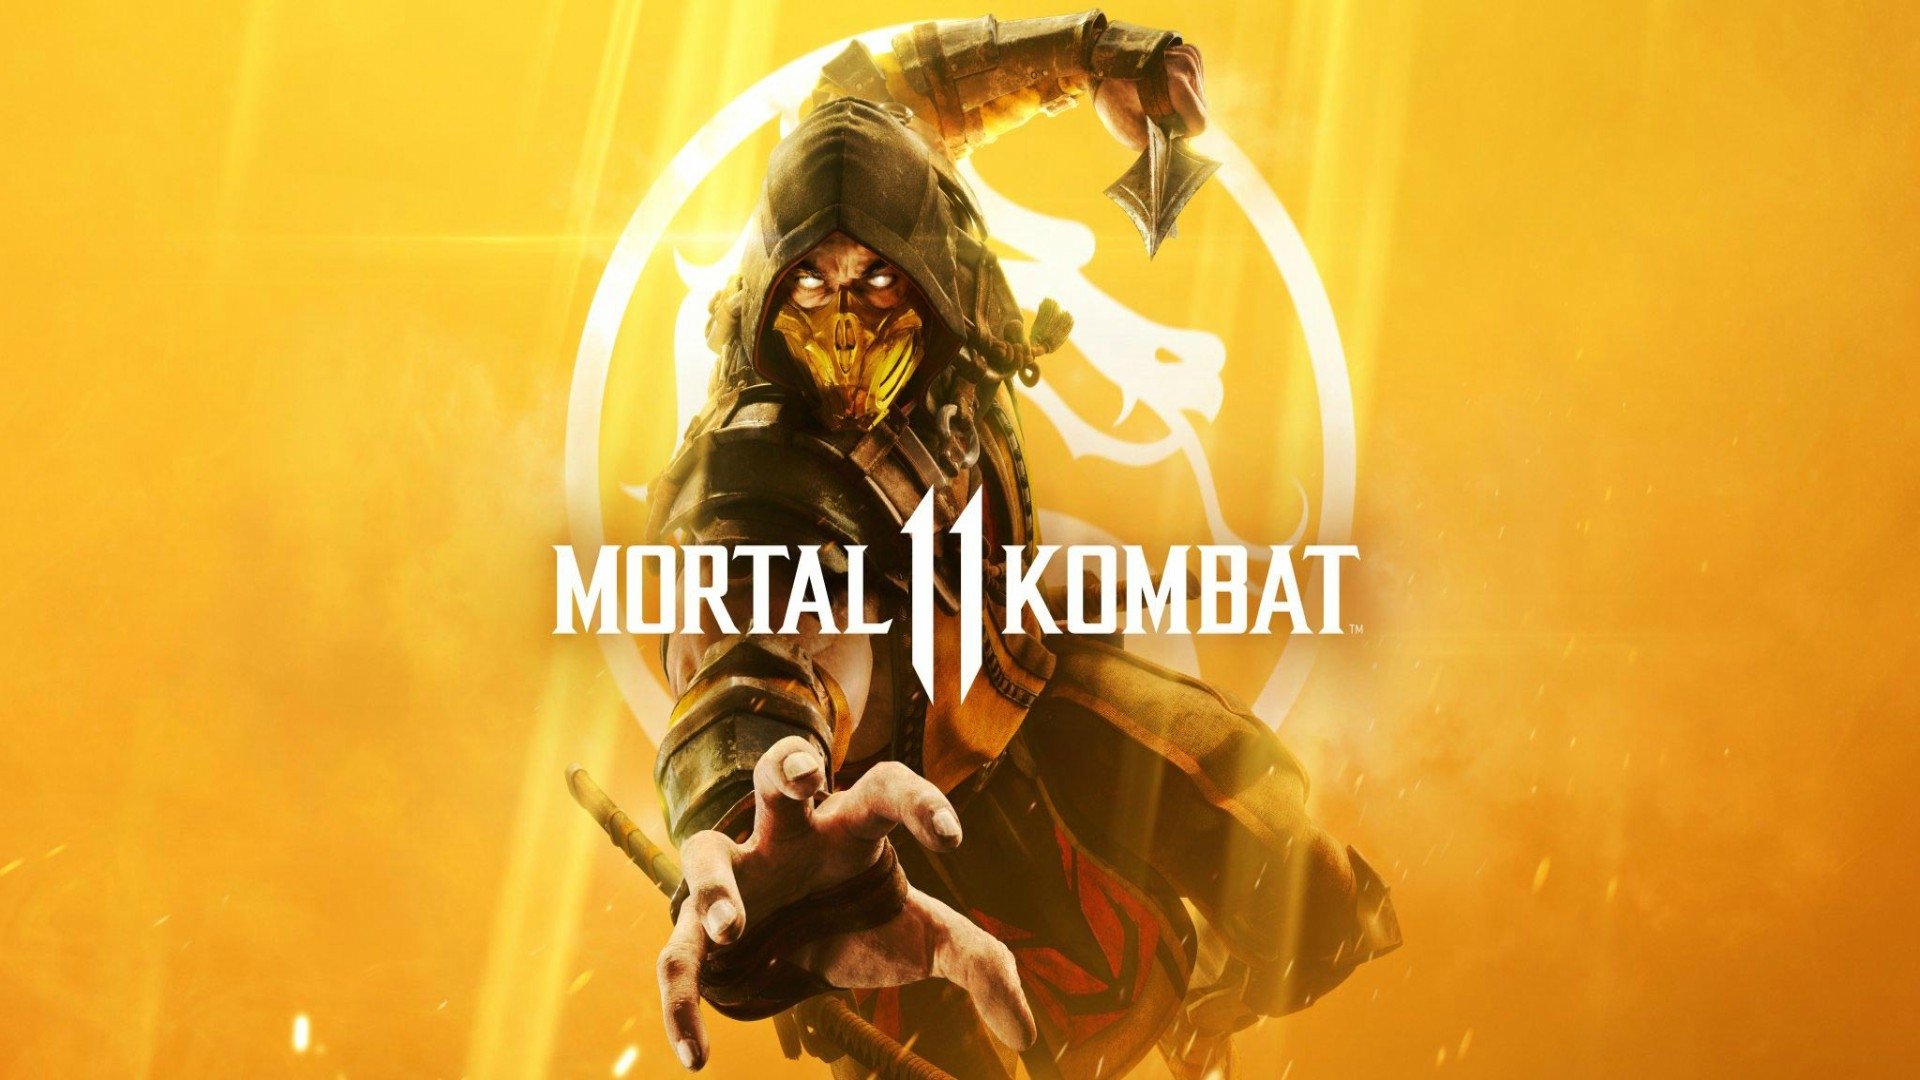 Download Mortal Kombat 9 Ps3 Iso Torrent